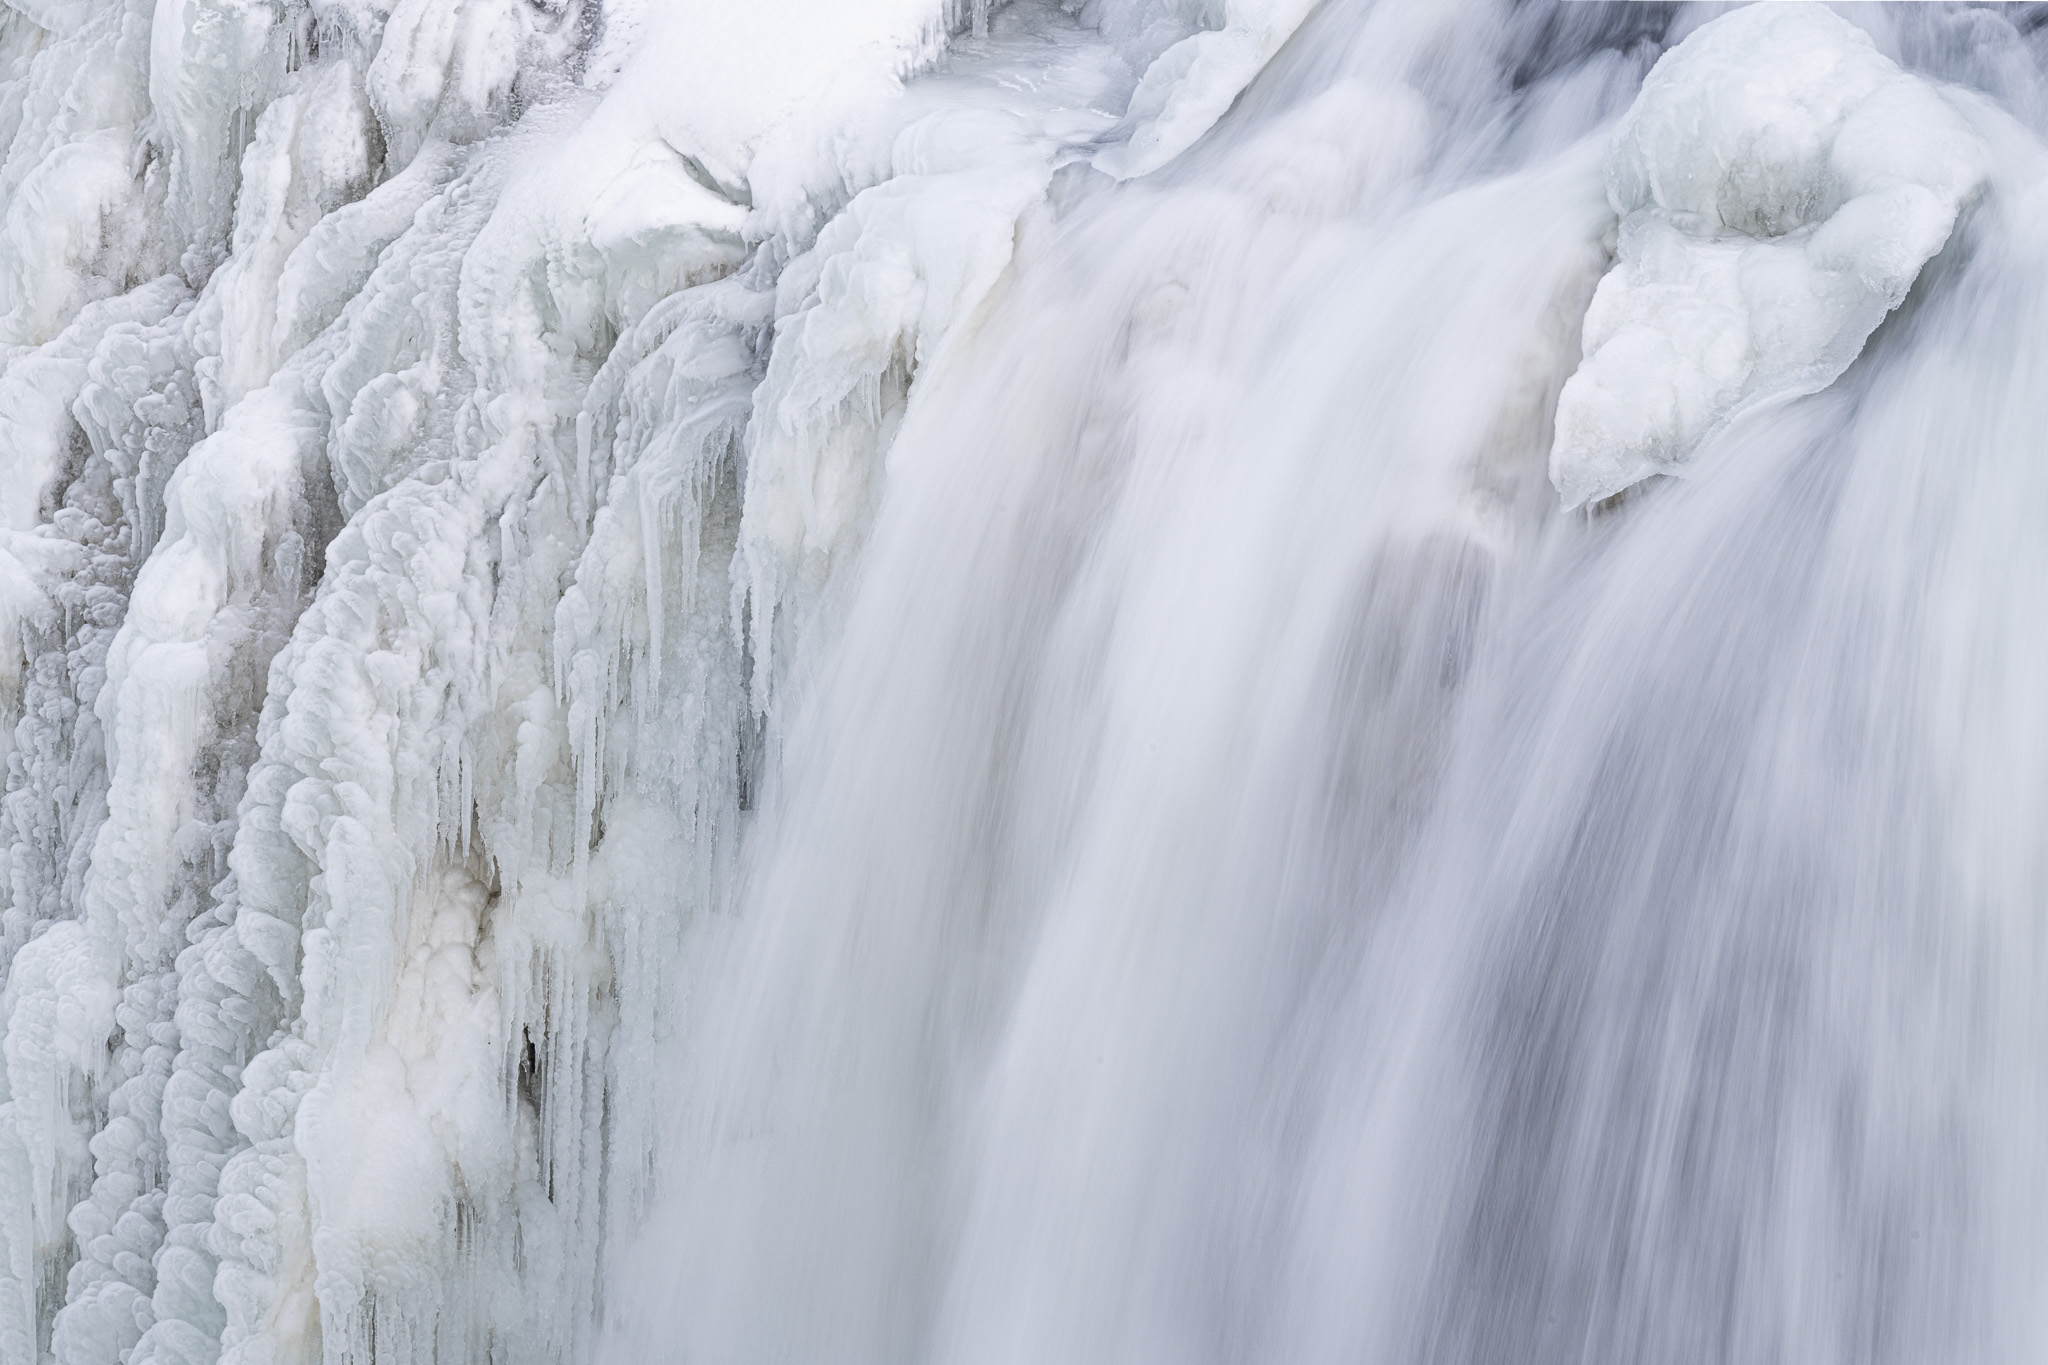 Eisstrukturen sowie fließendes Wasser in teilweise angefrorenen Gullfoss Wasserfall in Island.